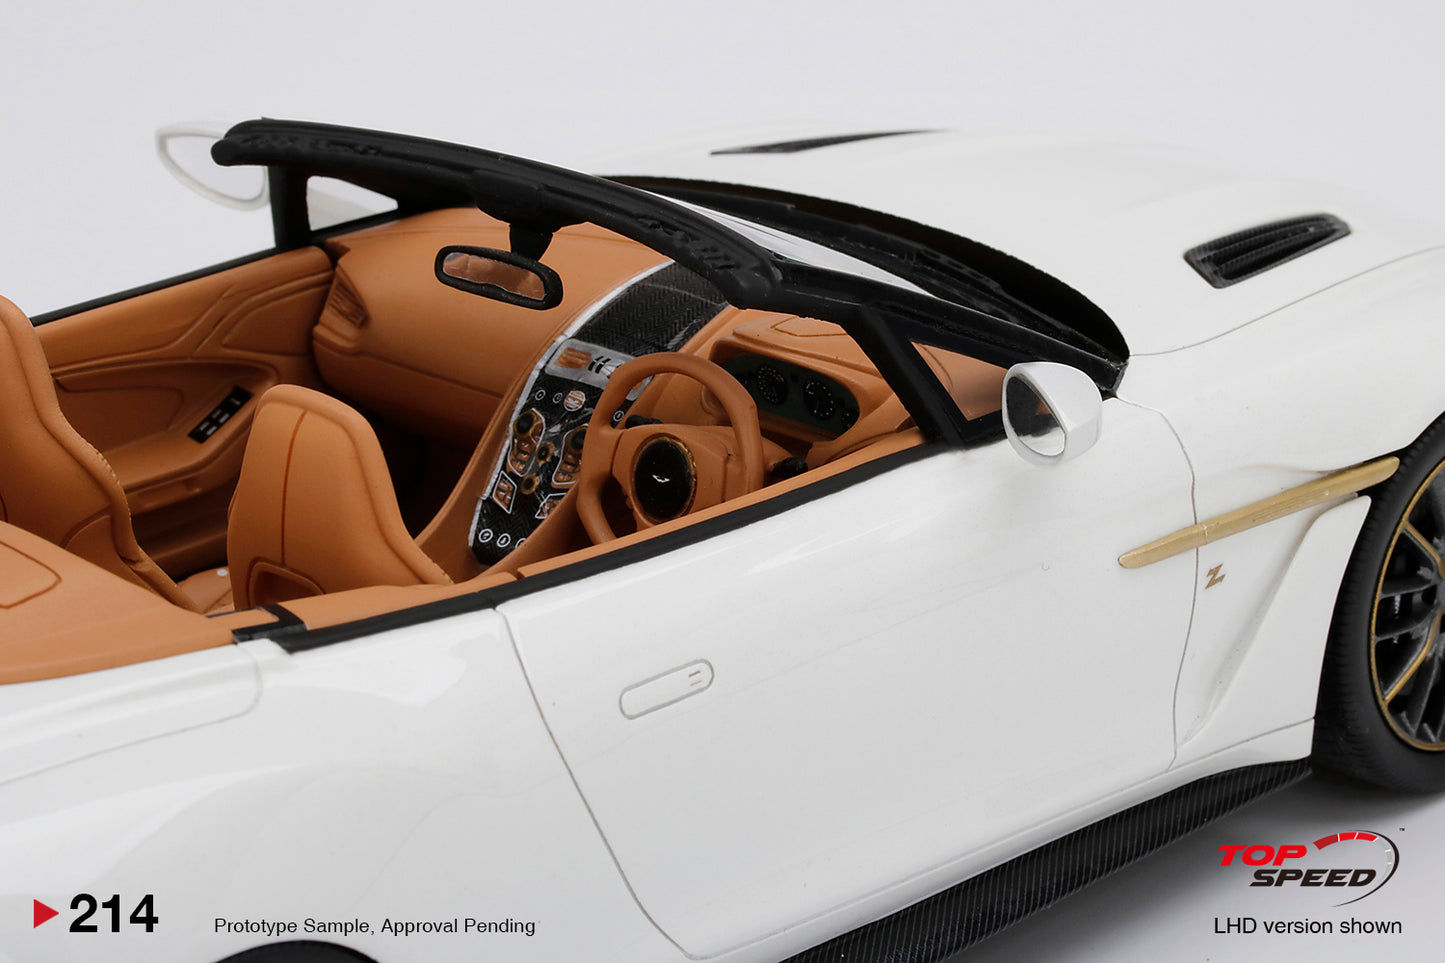 Topspeed 1:18 Aston Martin Vanquish Zagato Volante Escaping White